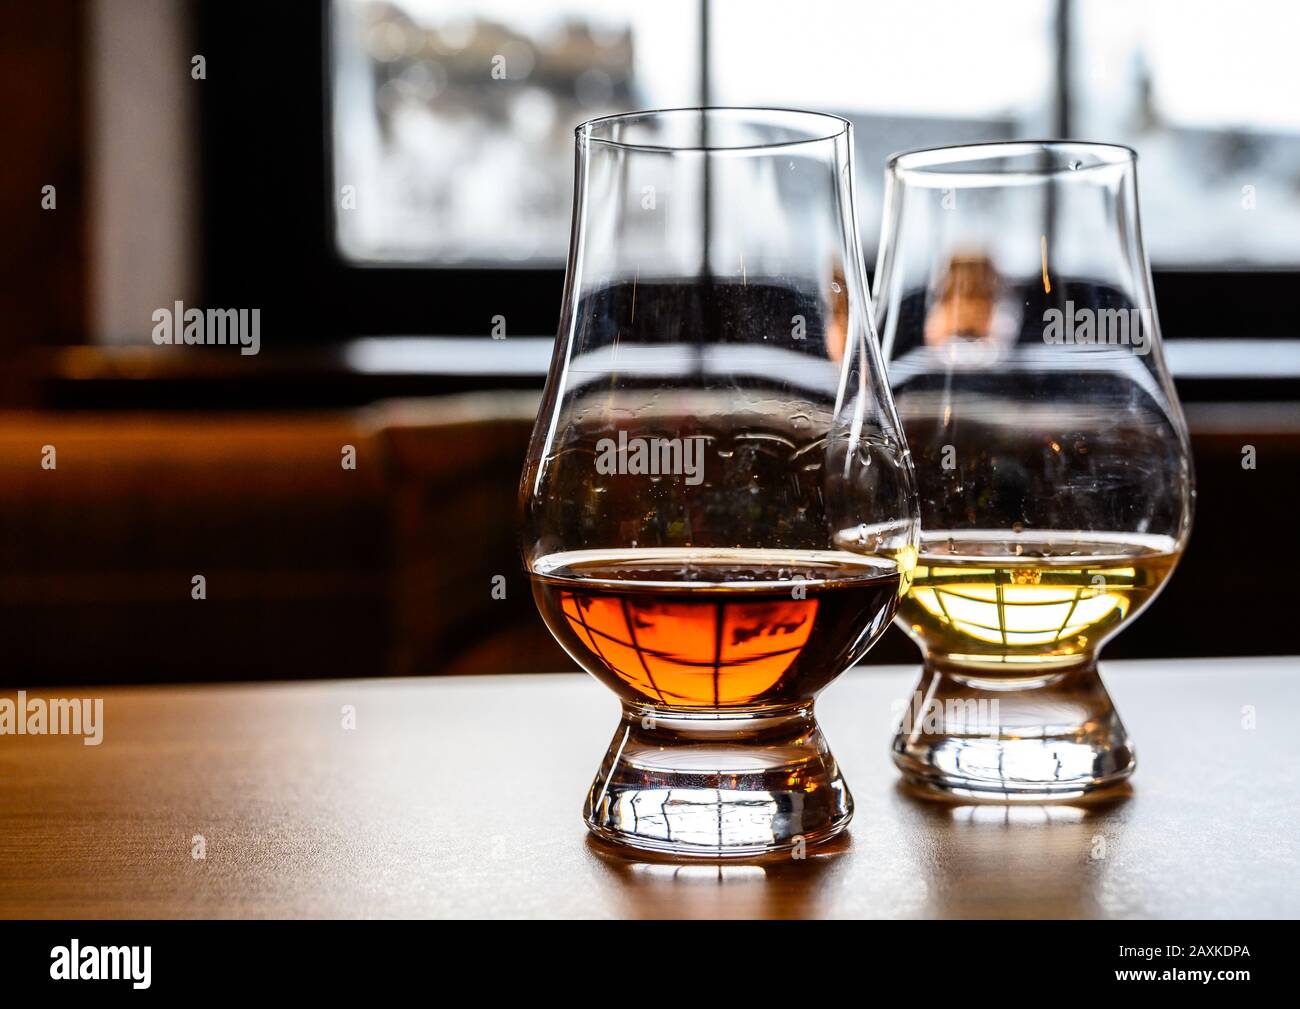 Flug von schottischem Whisky, Verkostung von Brillen mit verschiedenen Malts  oder Blended Whisky Spirits auf Brennerei-Tour in Schottland,  Großbritannien Stockfotografie - Alamy